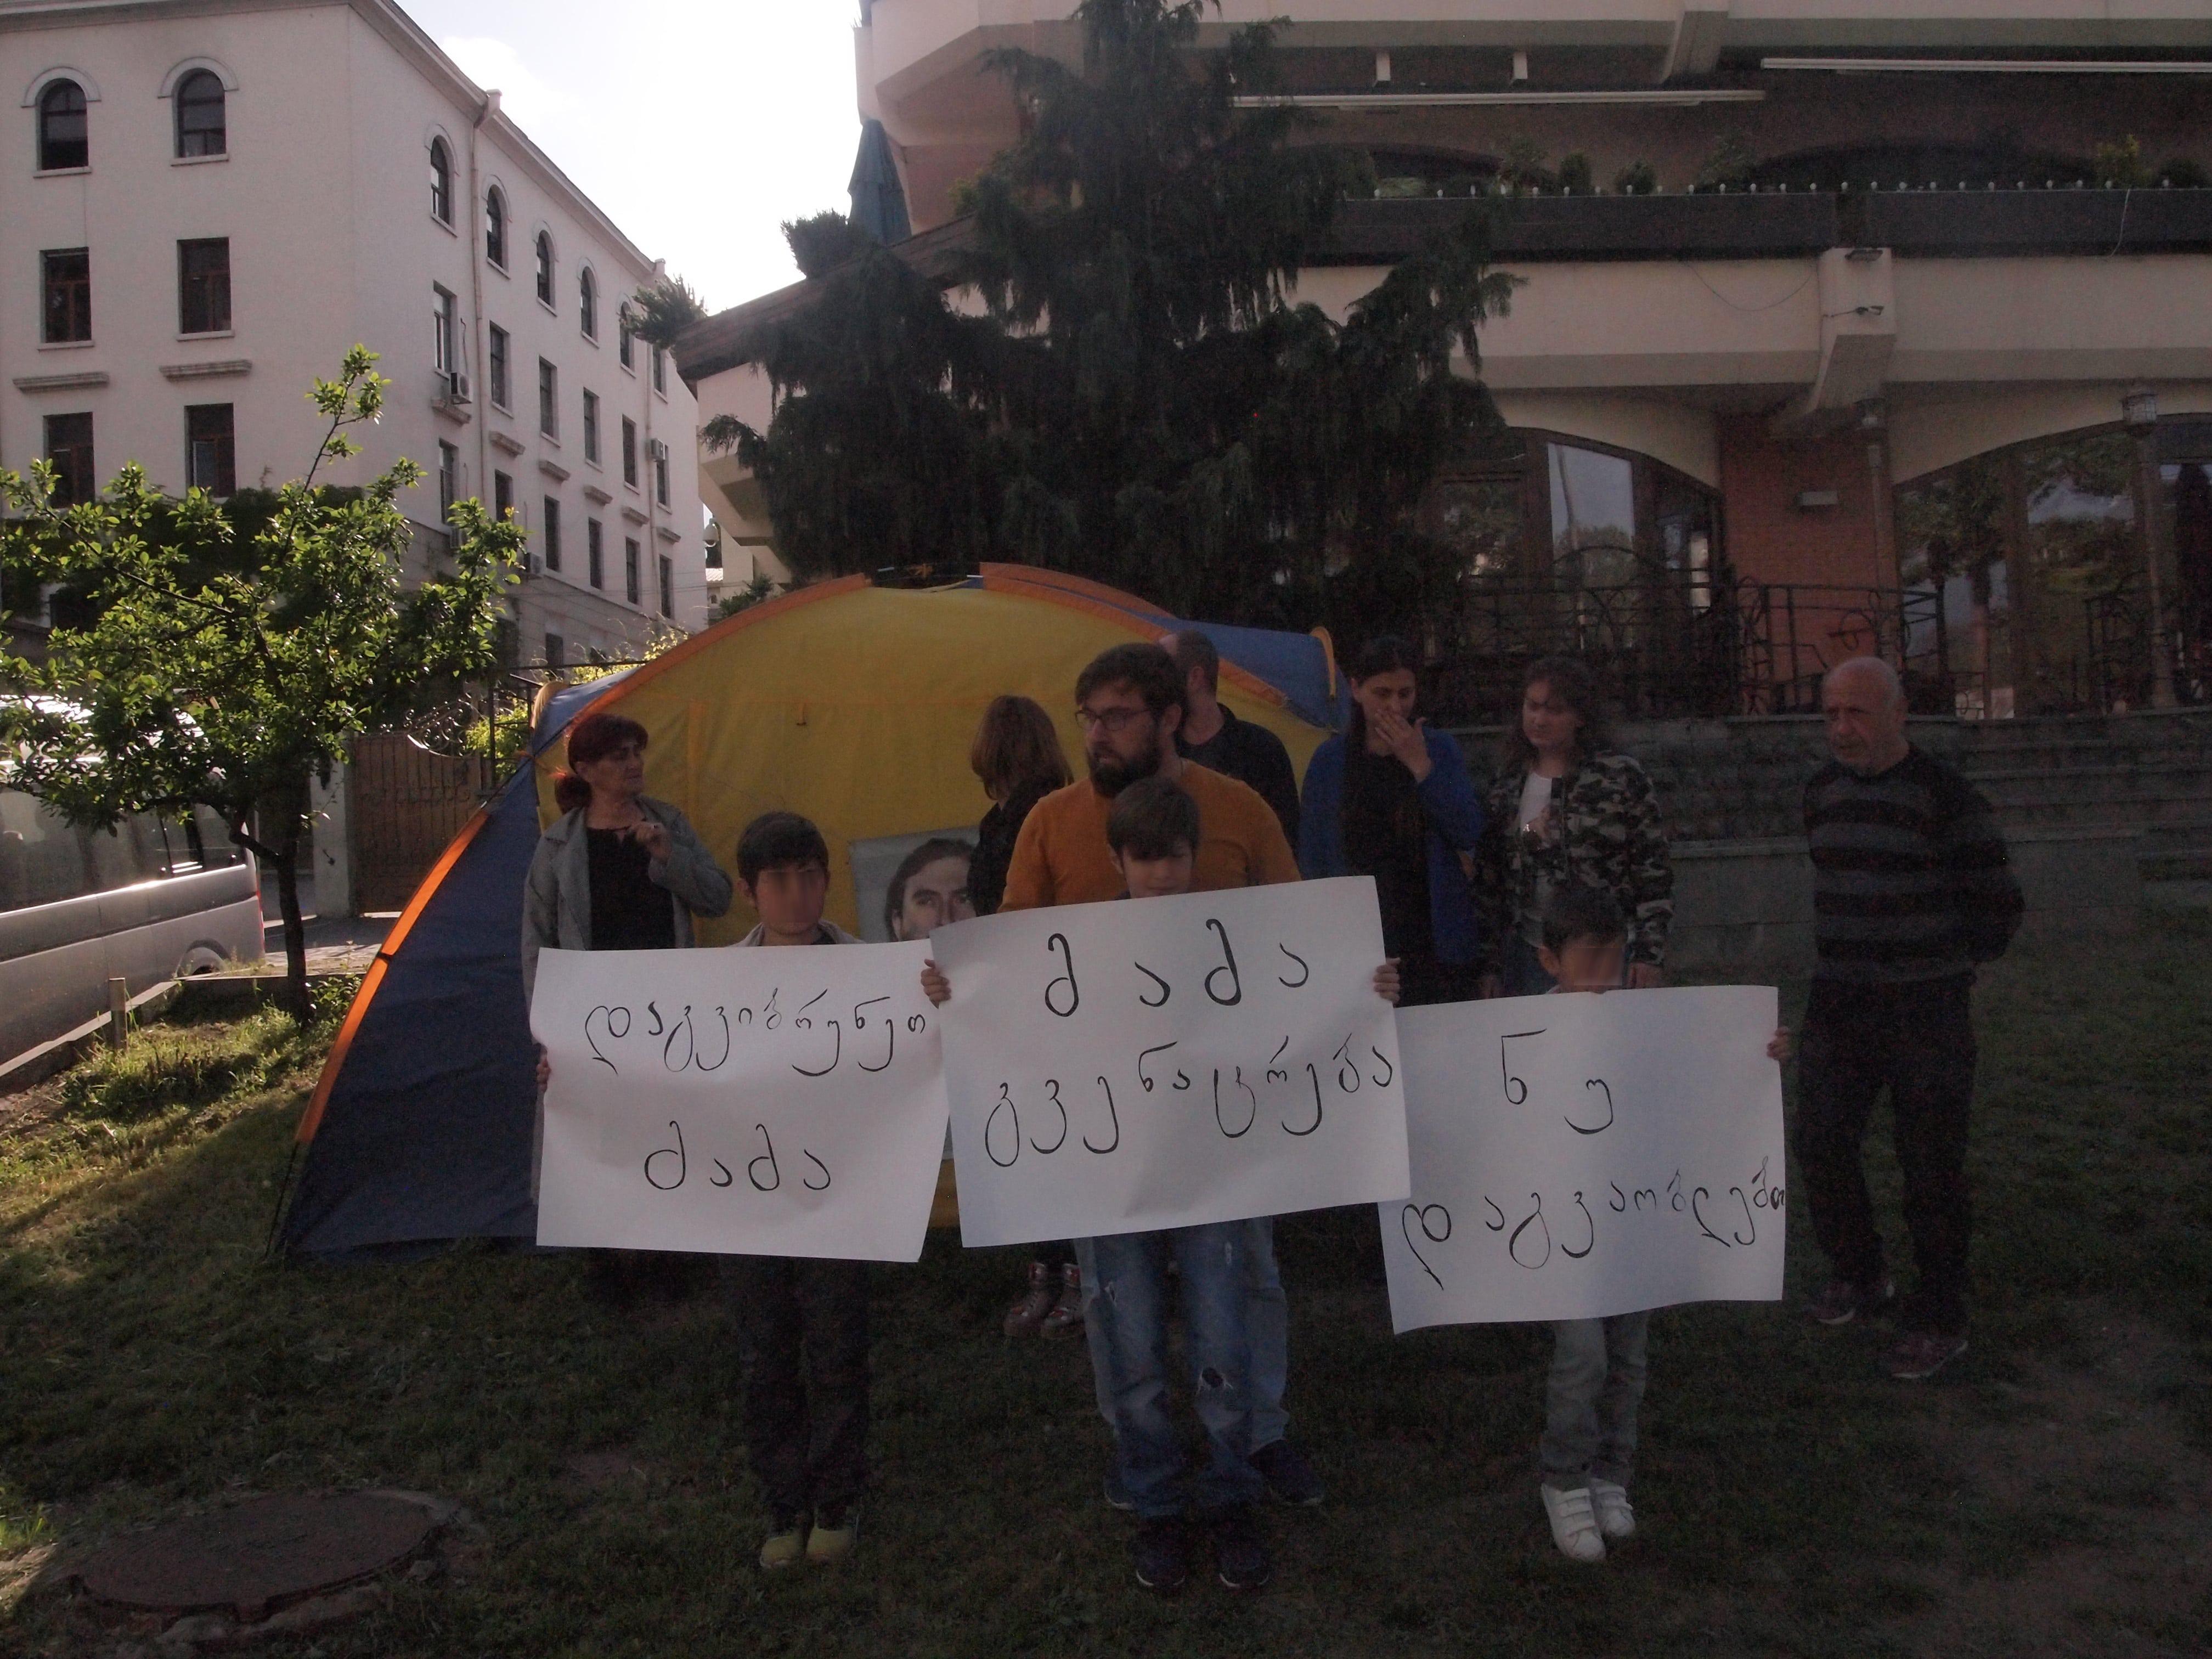 Участники акции протеста в поддержку Георгия Мамаладзе 3 мая 2019 года. Фото Беслана Кмузова для "Кавказского узла"